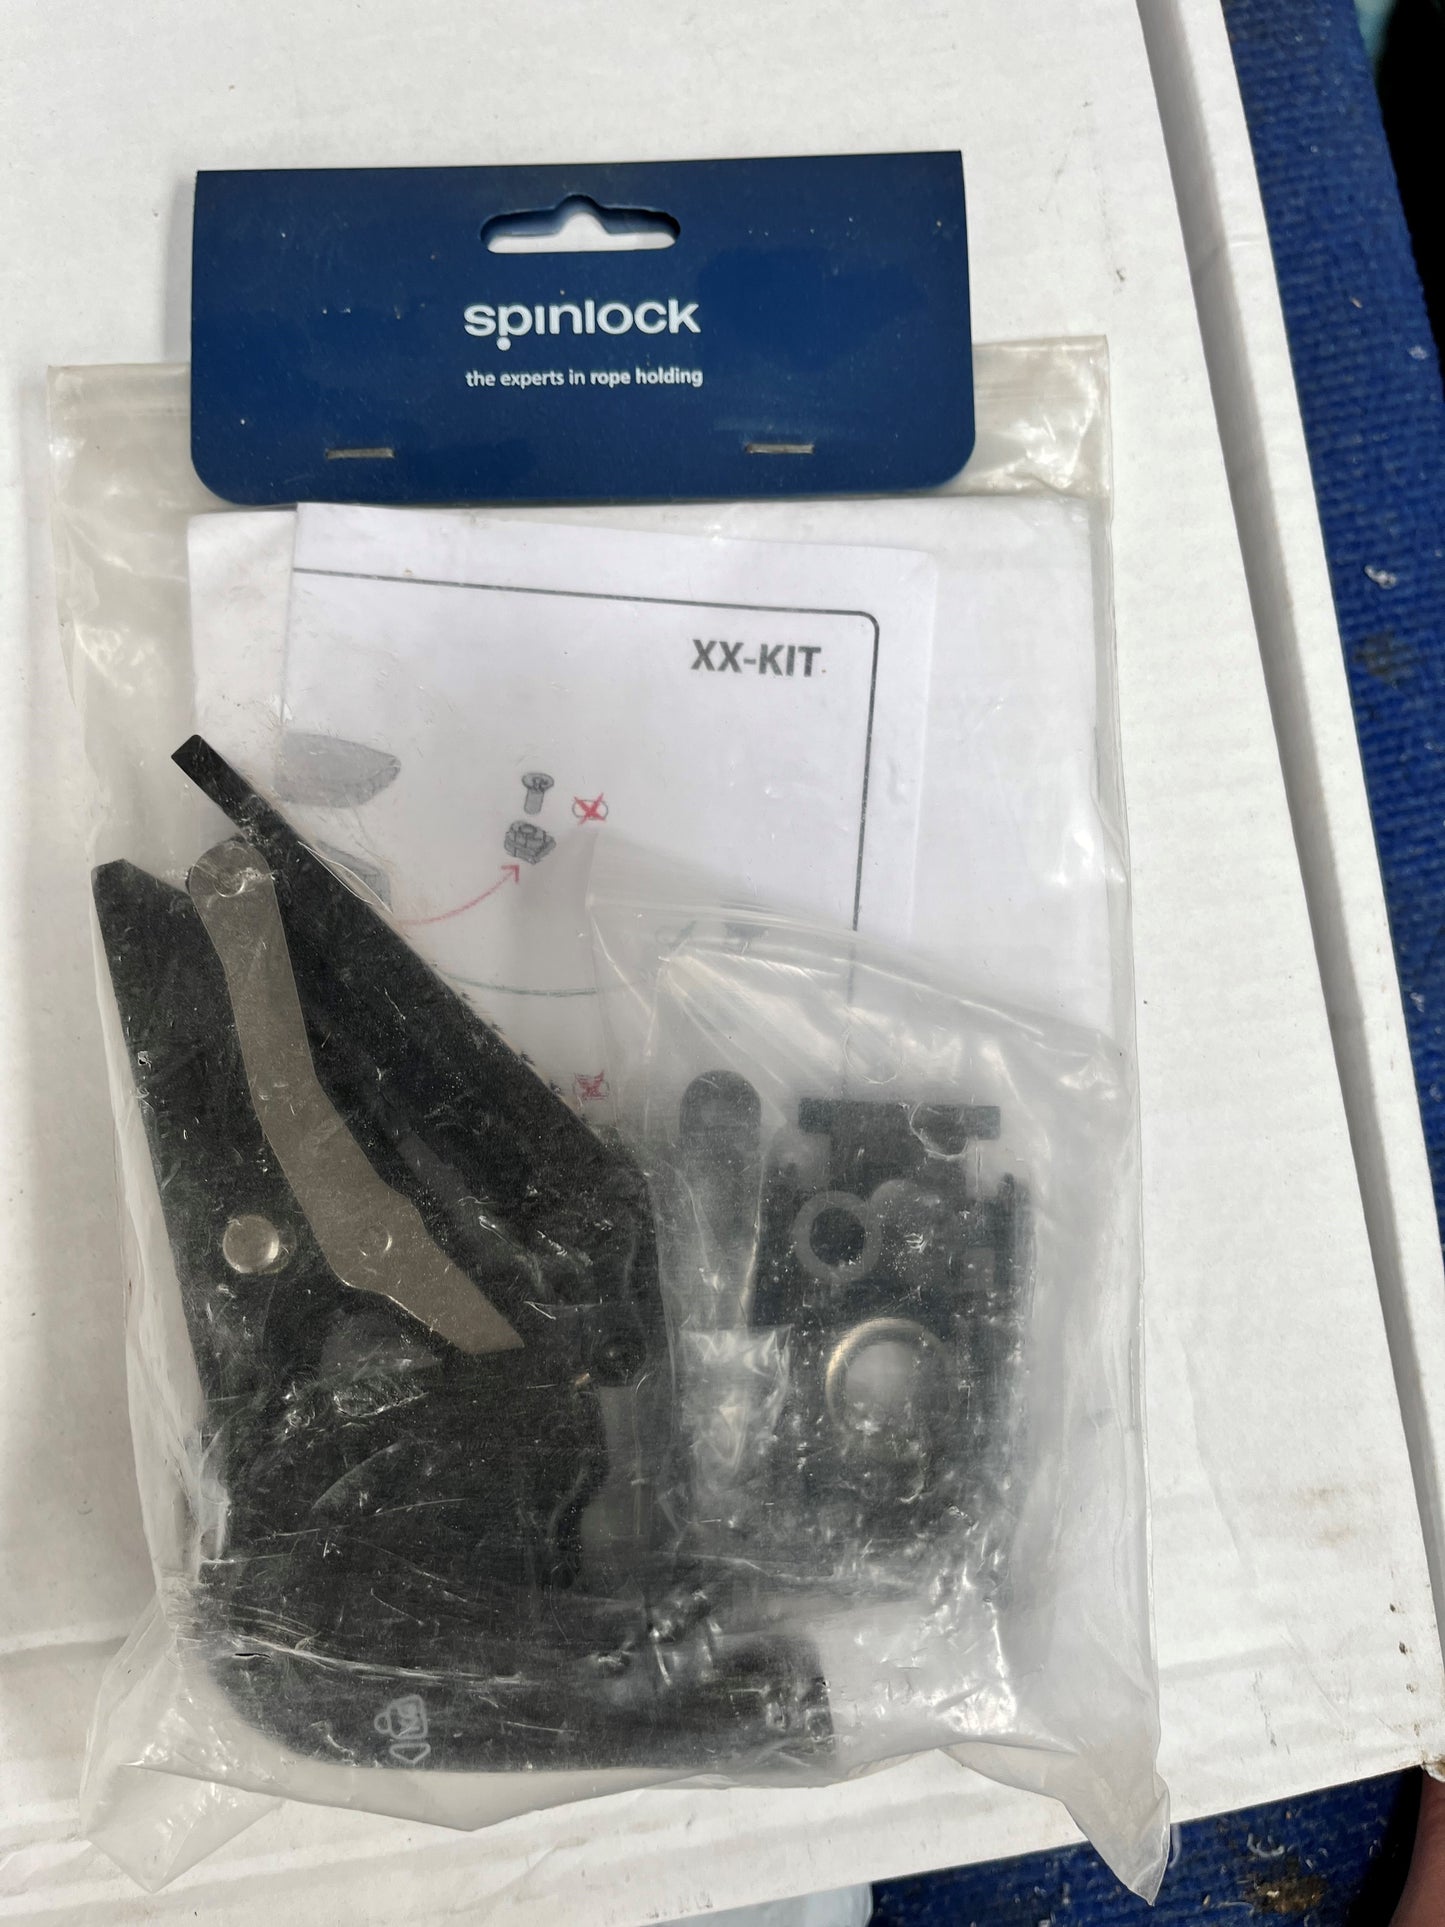 Spinlock clutch service kit